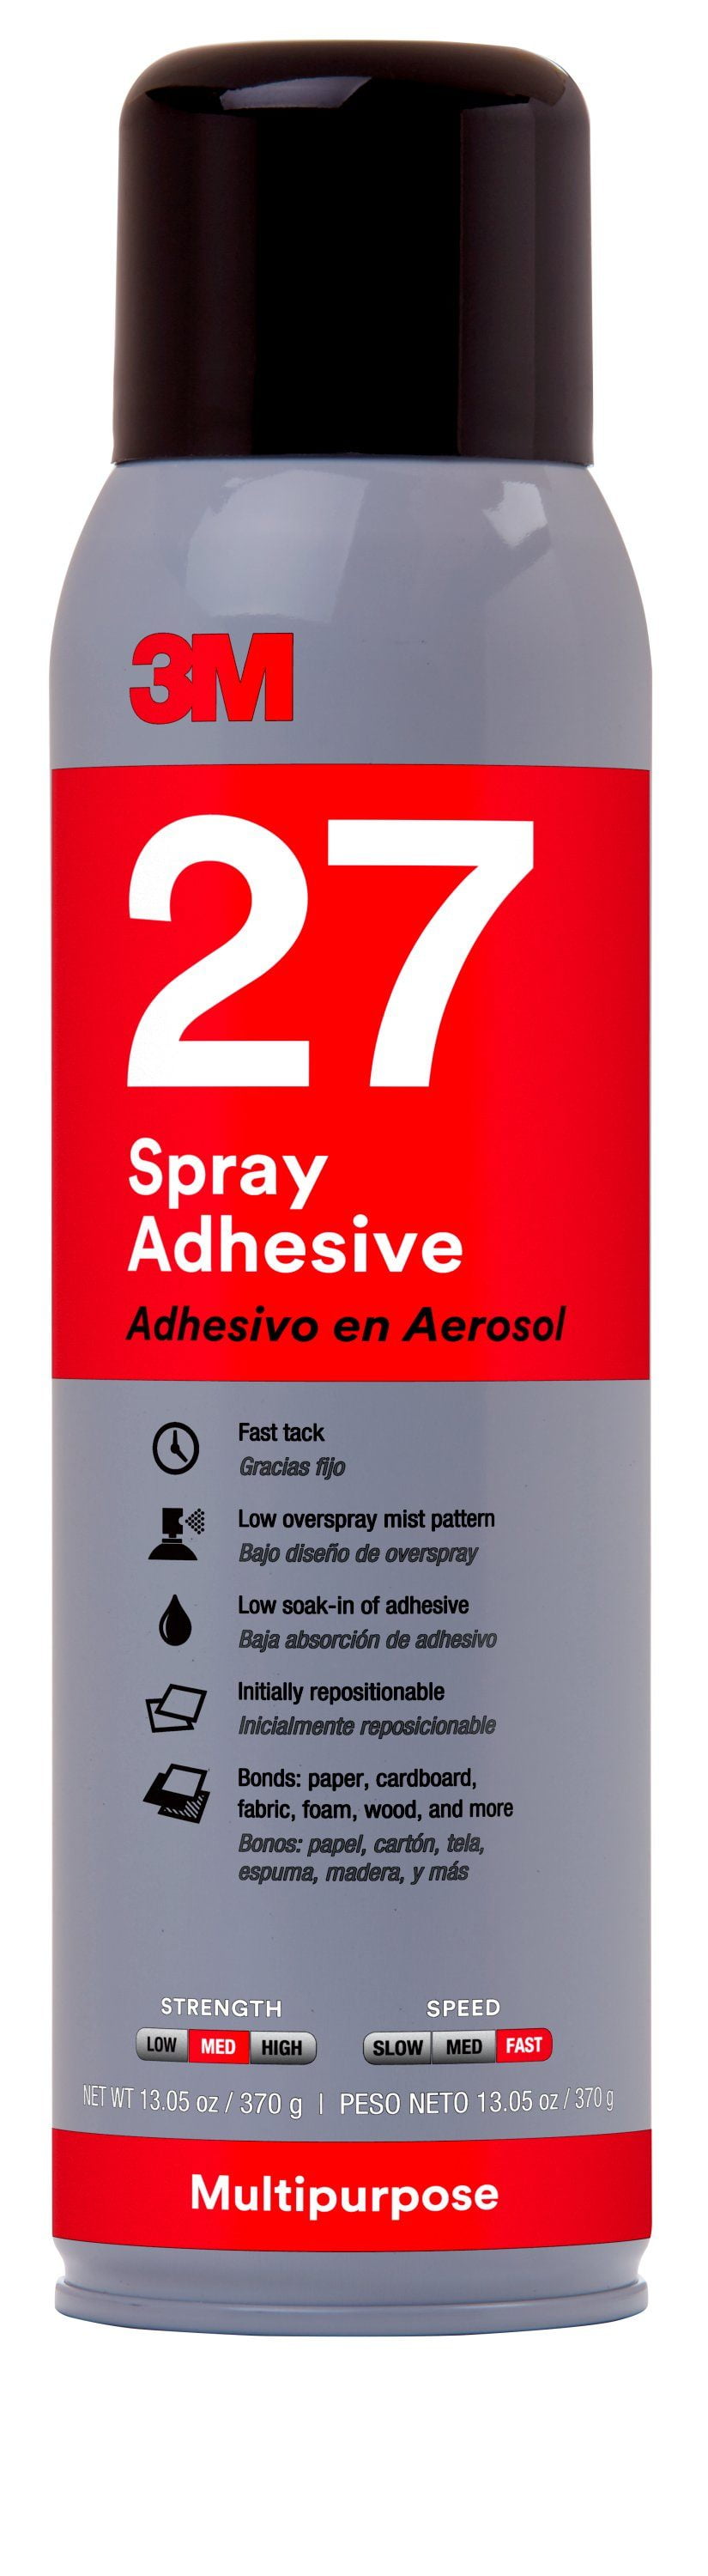 3M 3MADH07832 Multi-Purpose 27 Spray Adhesive